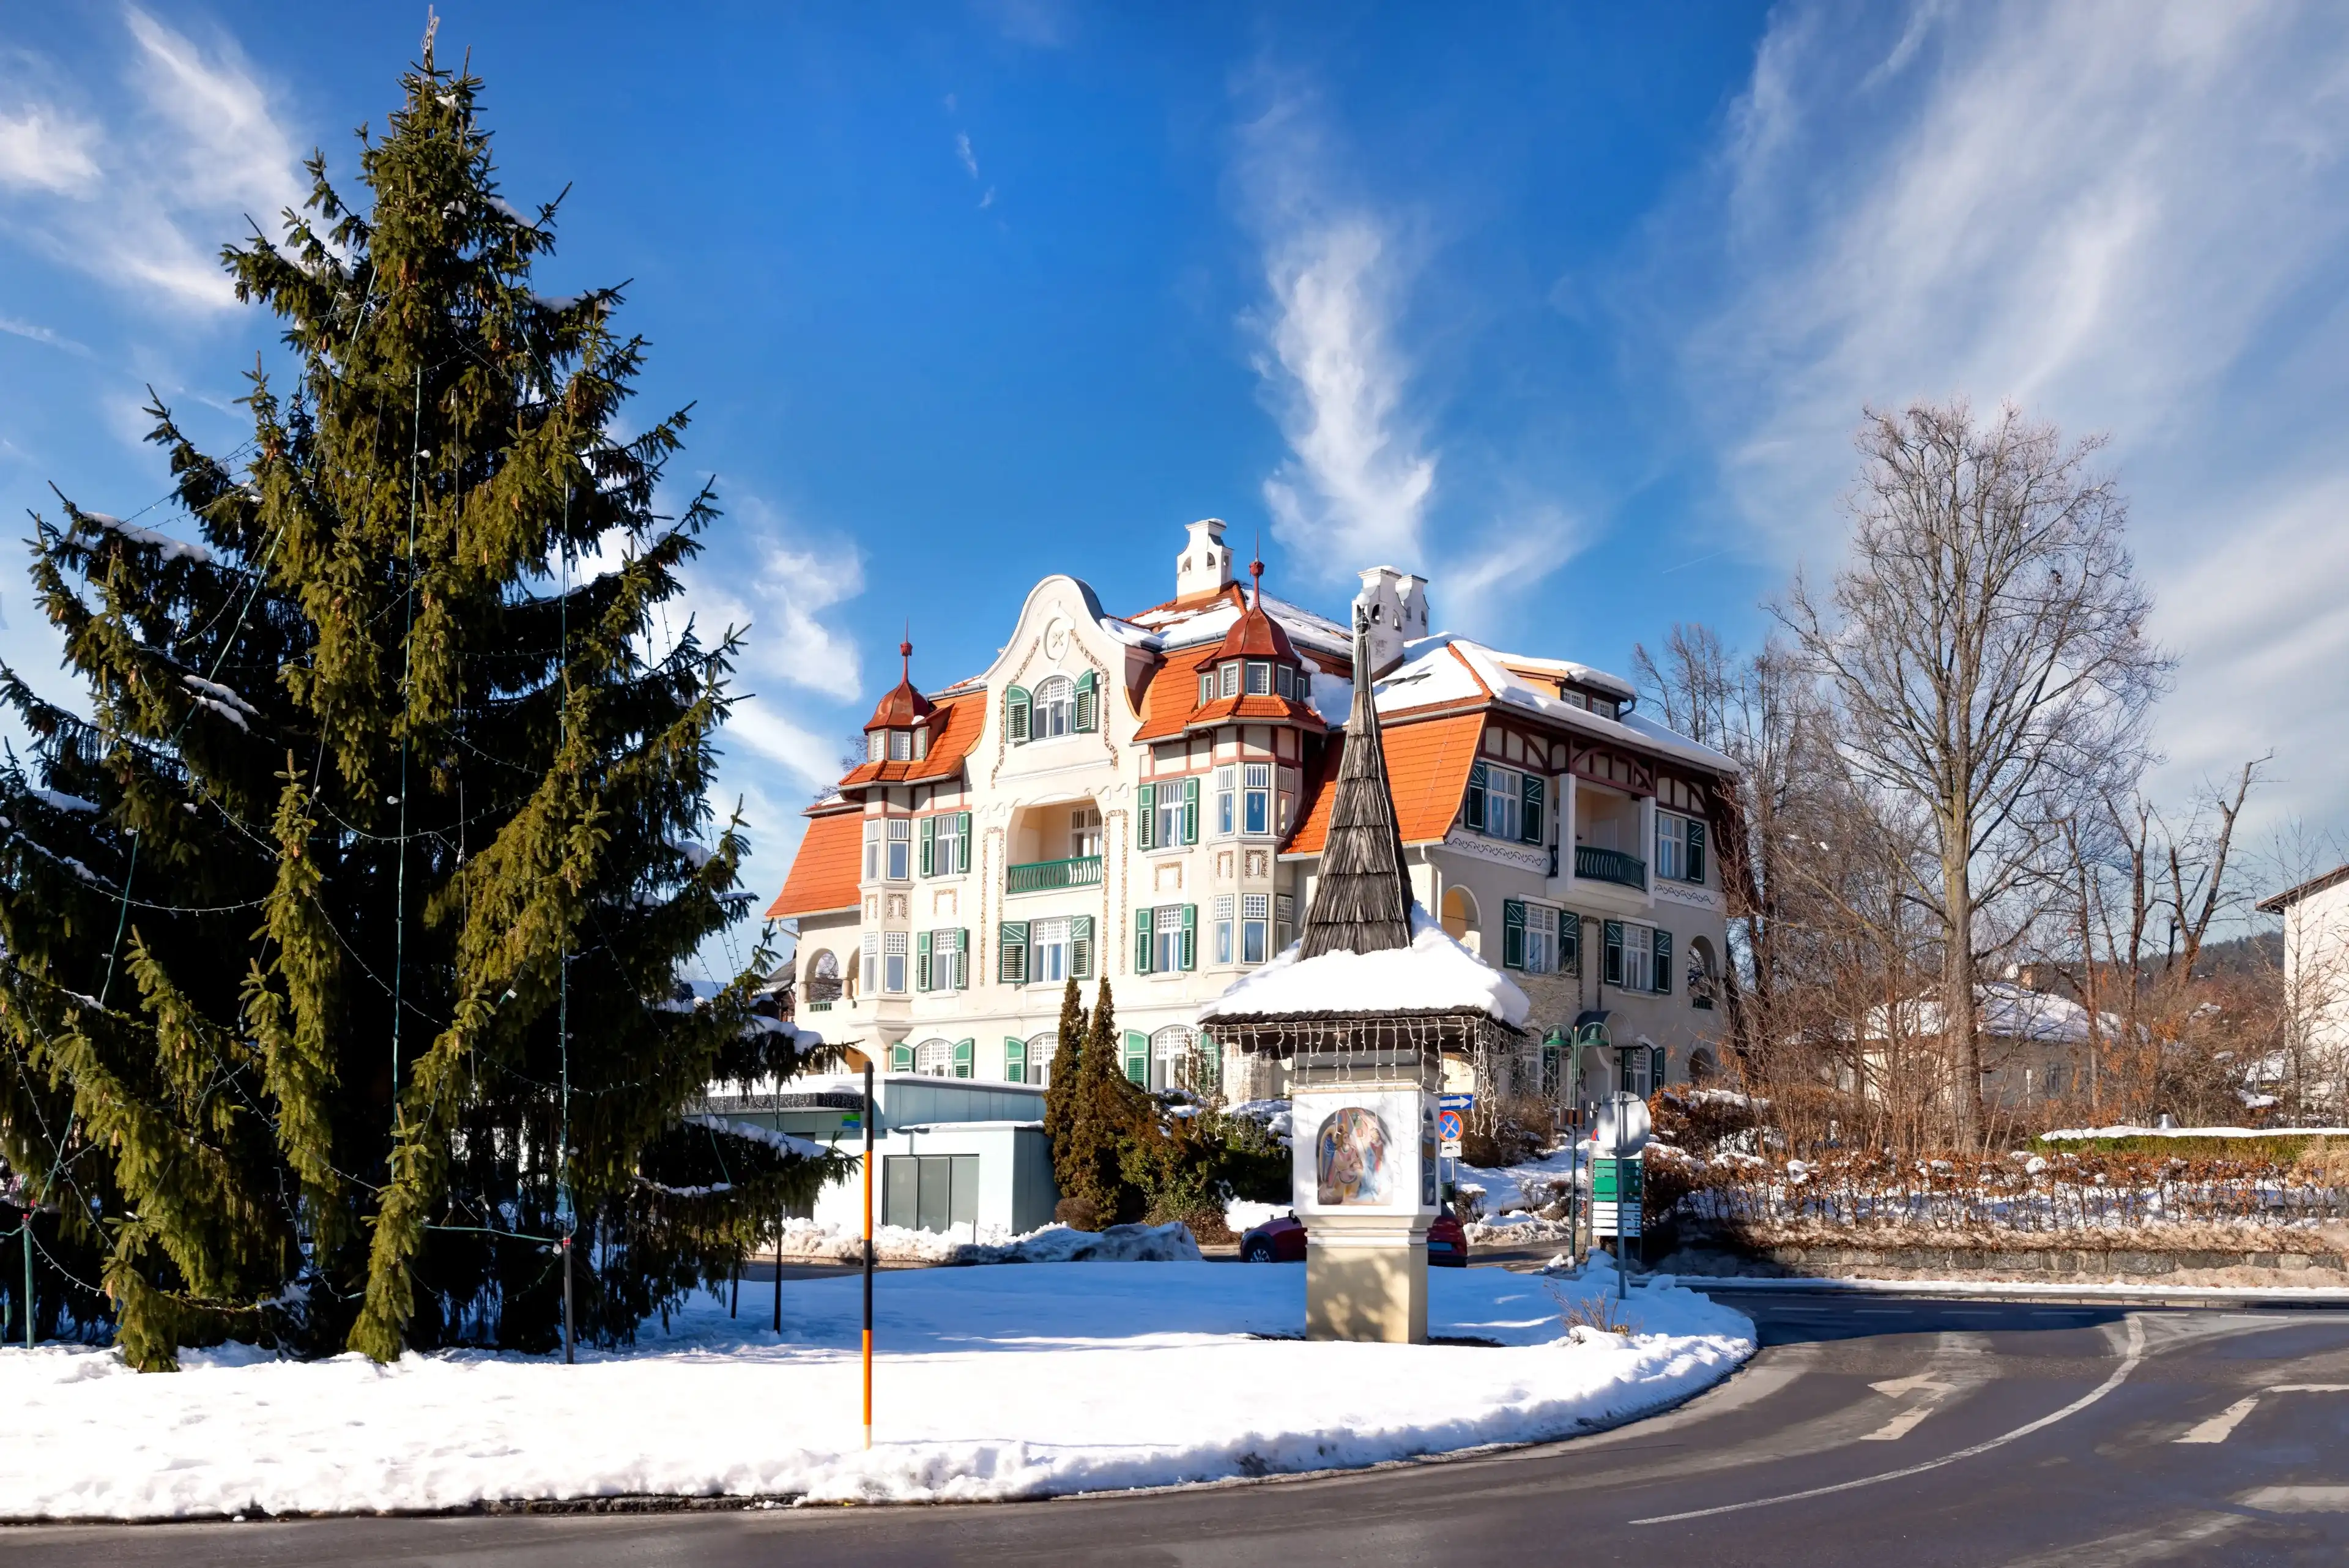 Best Velden am Wörthersee hotels. Cheap hotels in Velden am Wörthersee, Austria